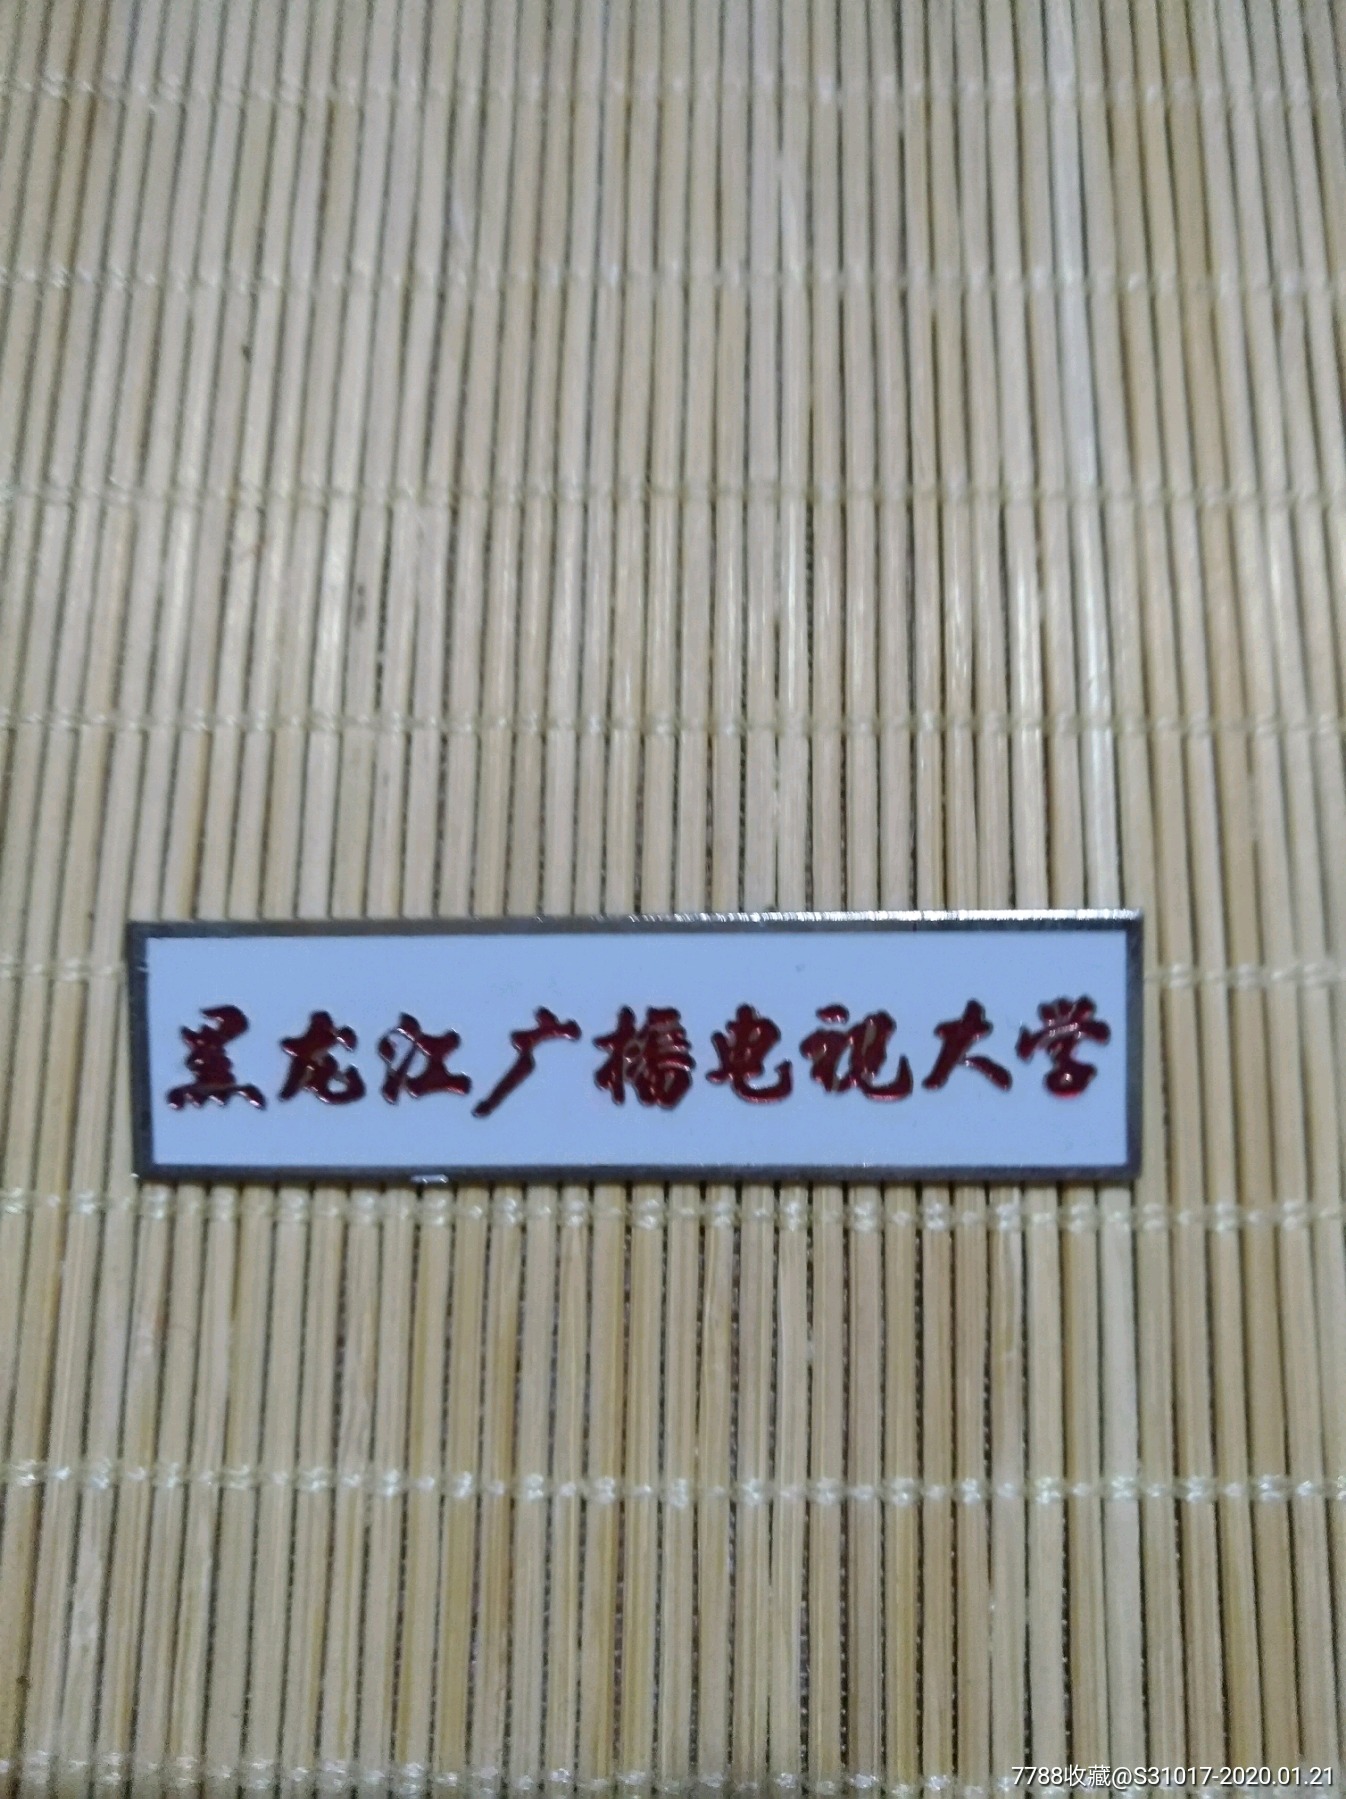 校徽:黑龙江广播电视大学(锌锡合金材质)